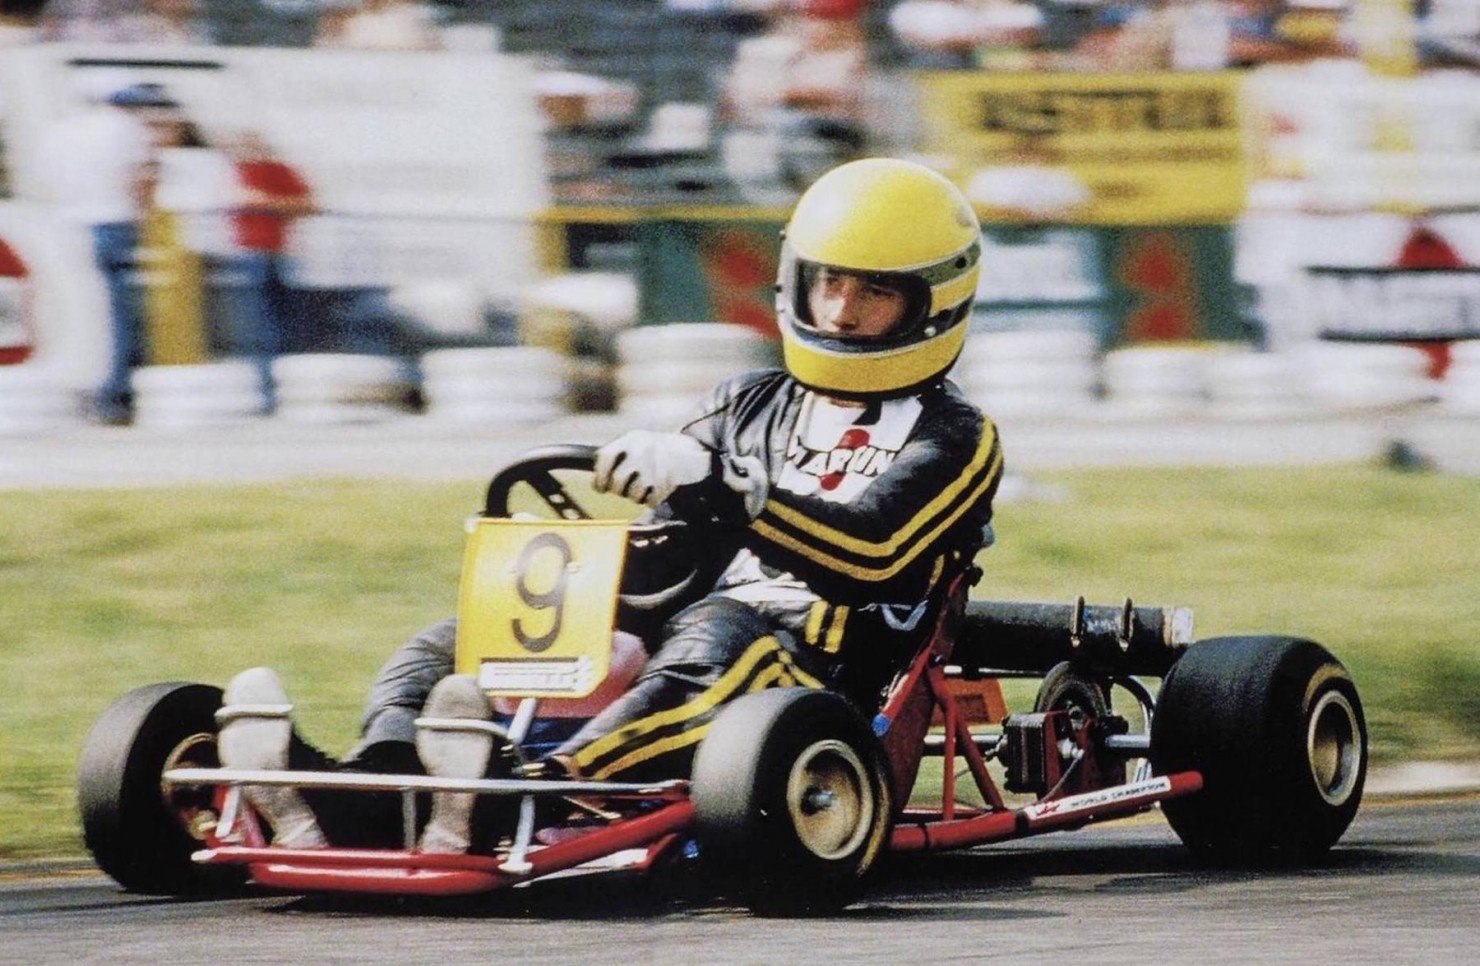 DAP Kart Ayrton Senna